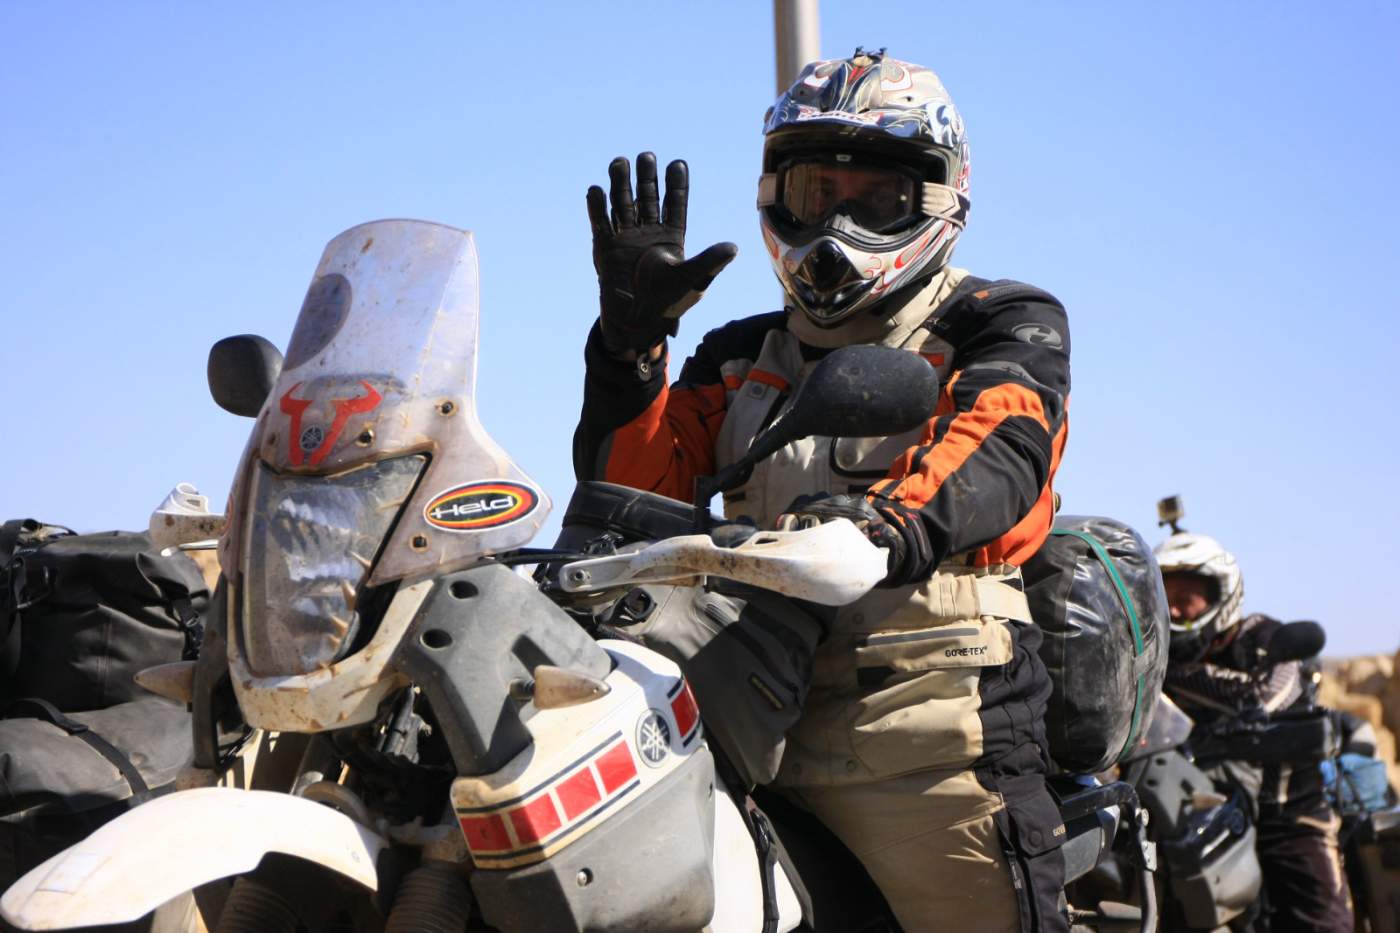 Winkender Motorradfahrer auf Reise durch Afrika